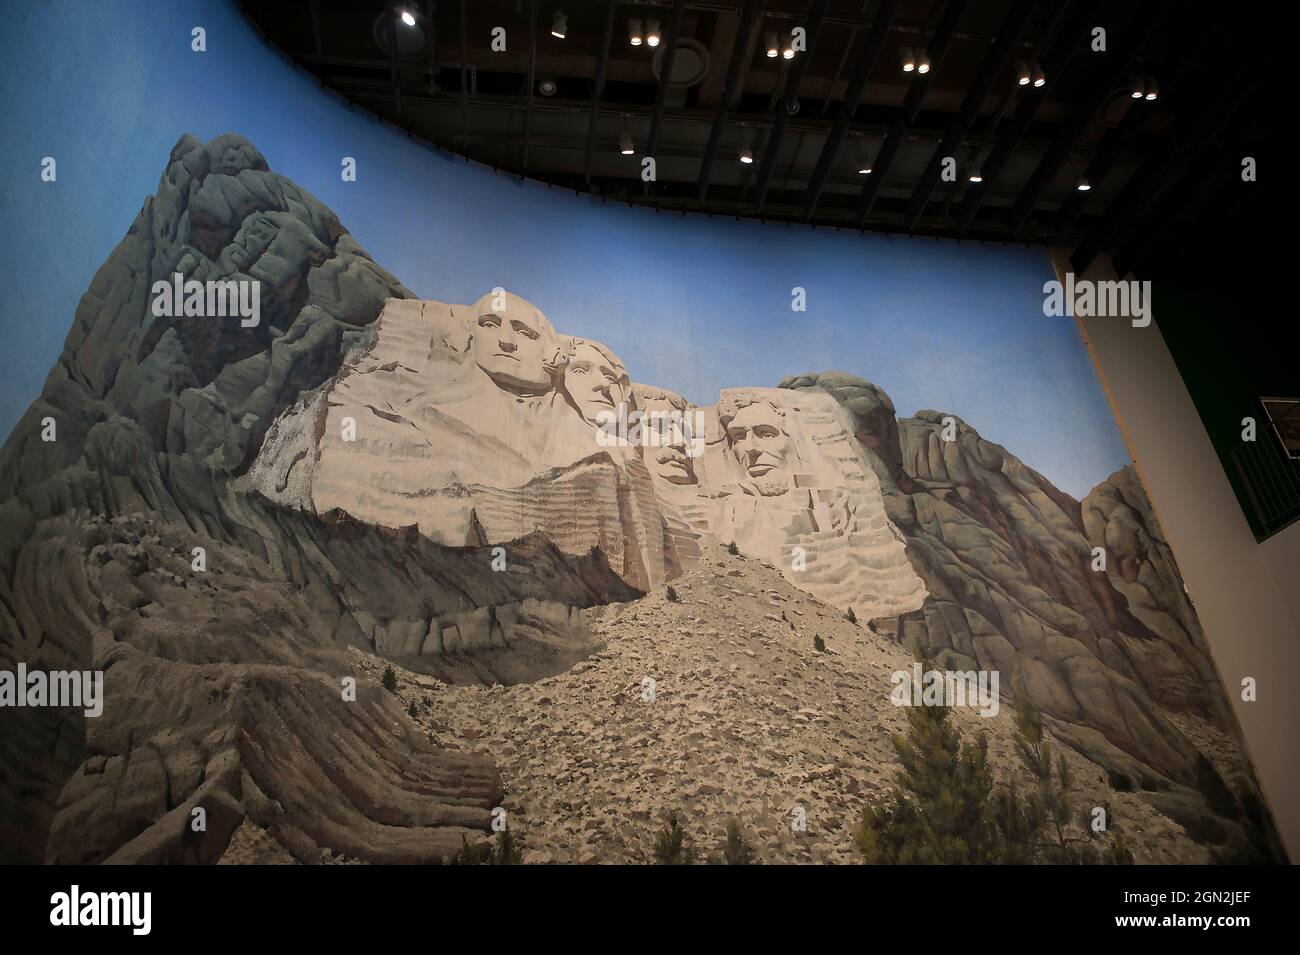 Gemalte Kulisse des Mount Rushmore aus Alfred Hitchcock Film North by Northwest, ausgestellt im Academy Museum of Motion Pictures, Los Angeles, CA Stockfoto